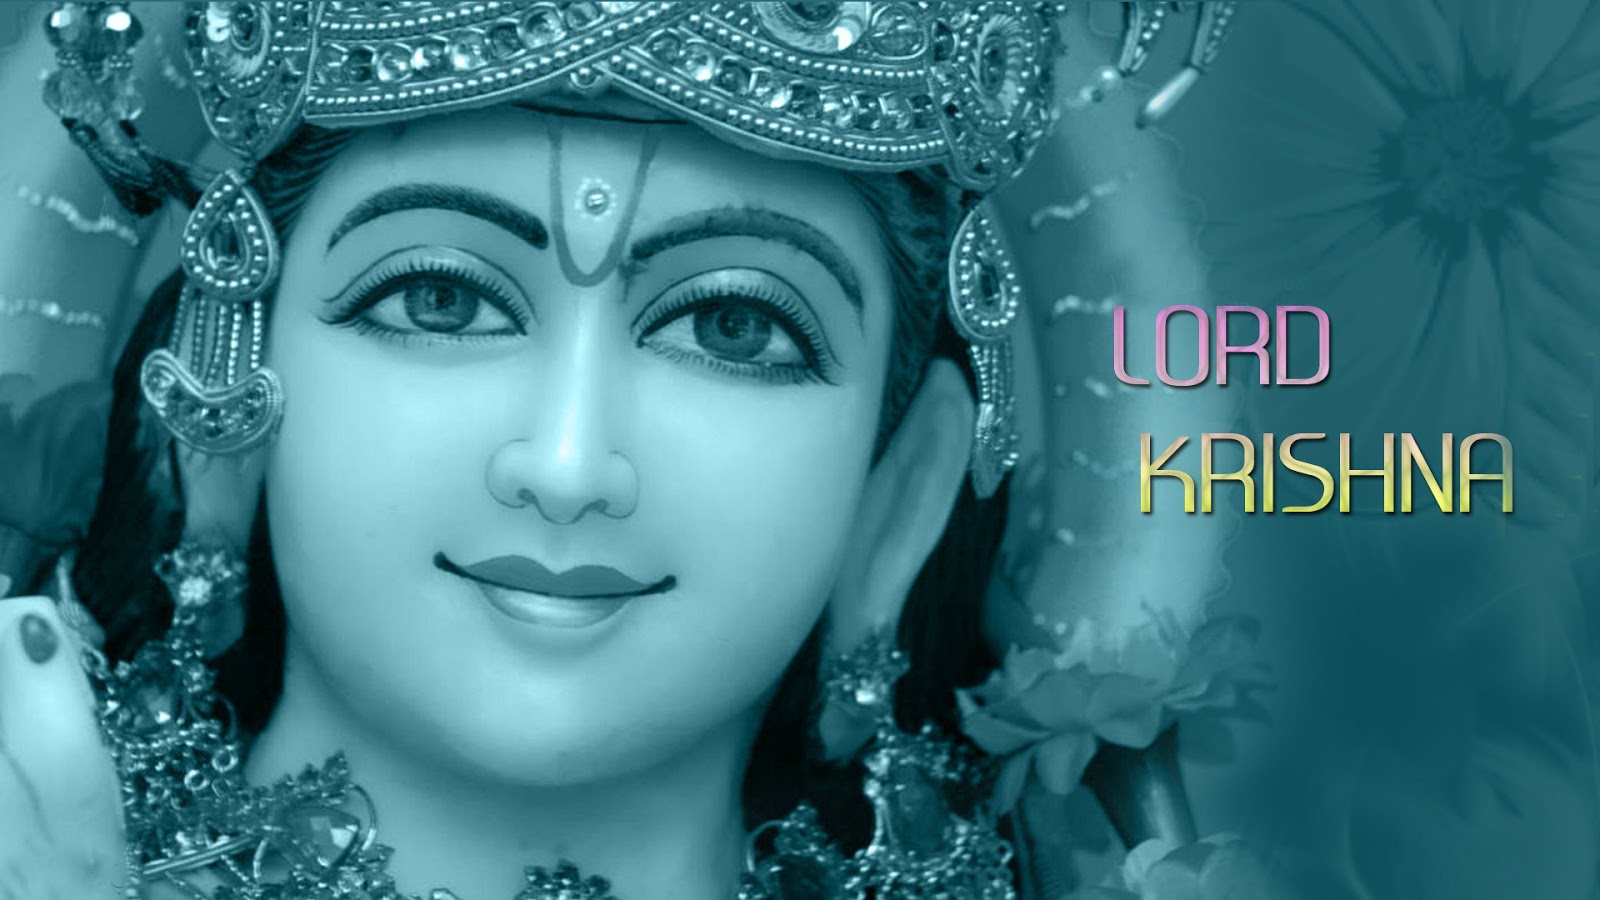 Free download Krishna hd wallpaperfull screen pics of god ...